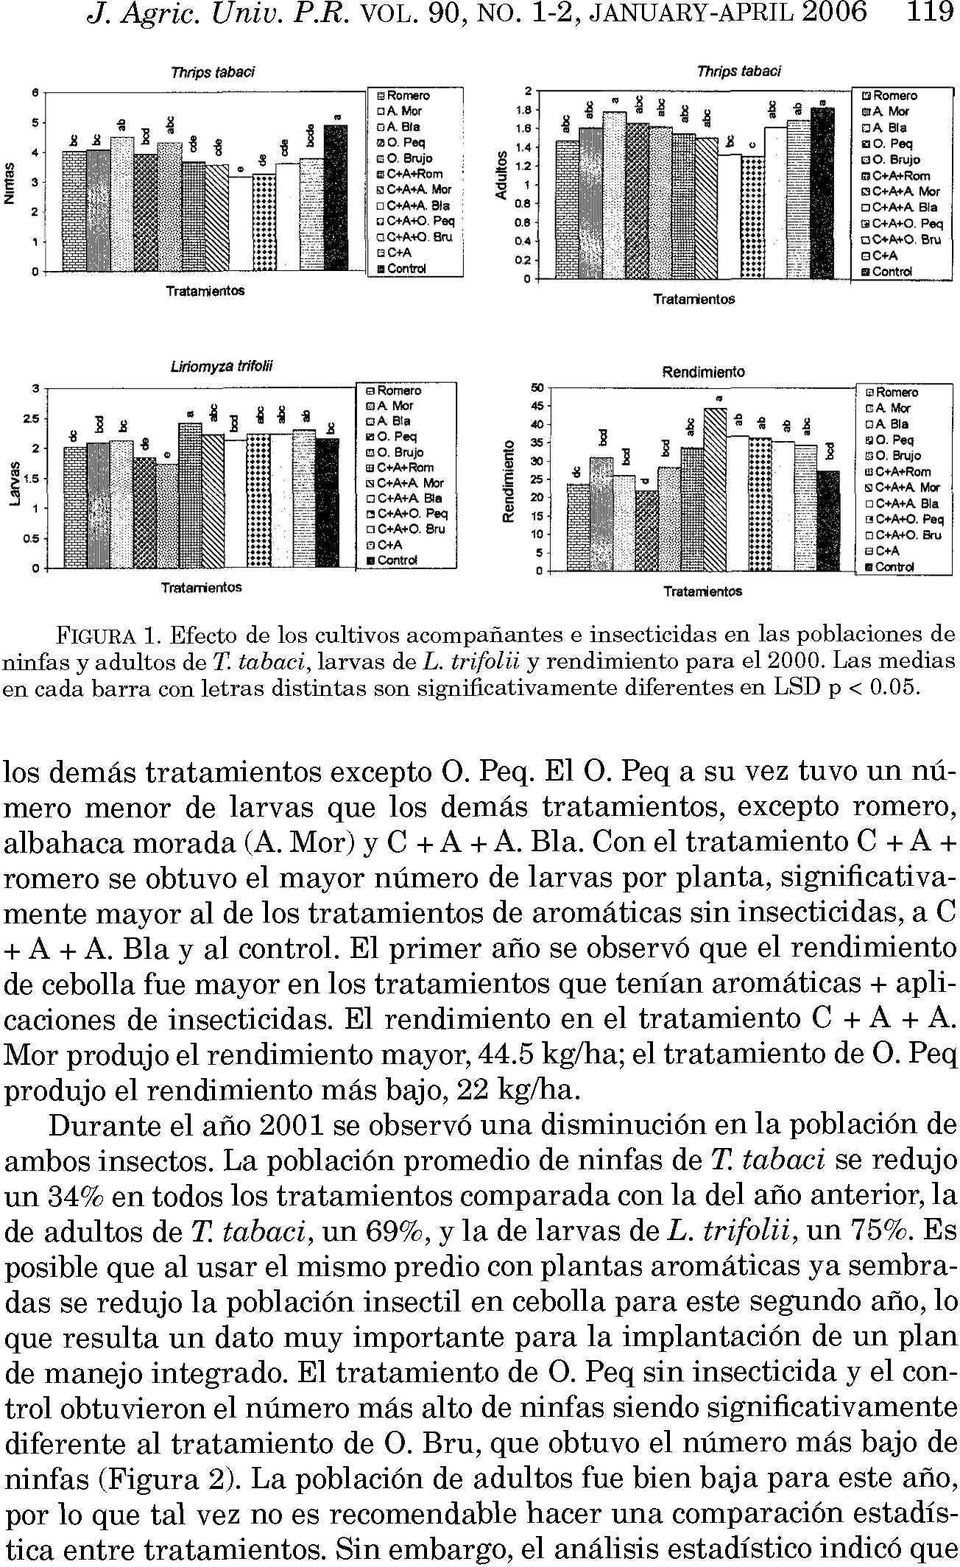 Efecto de los cultivos acompañantes e insecticidas en las poblaciones de ninfas y adultos de T. tabaci, larvas de L. trifolii y rendimiento para el 2000.